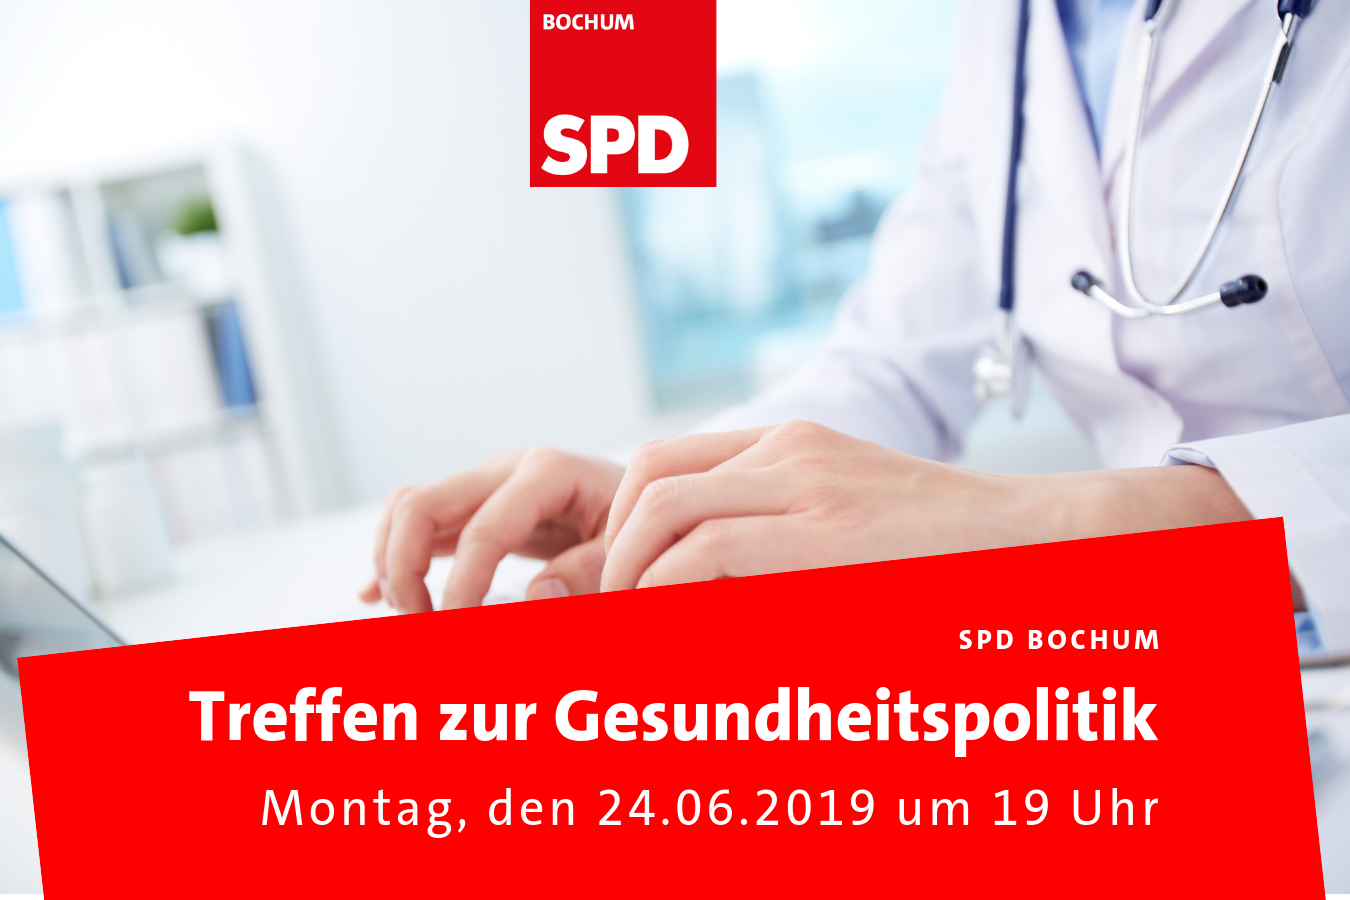 SPD Bochum: Treffen zur Gesundheitspolitik